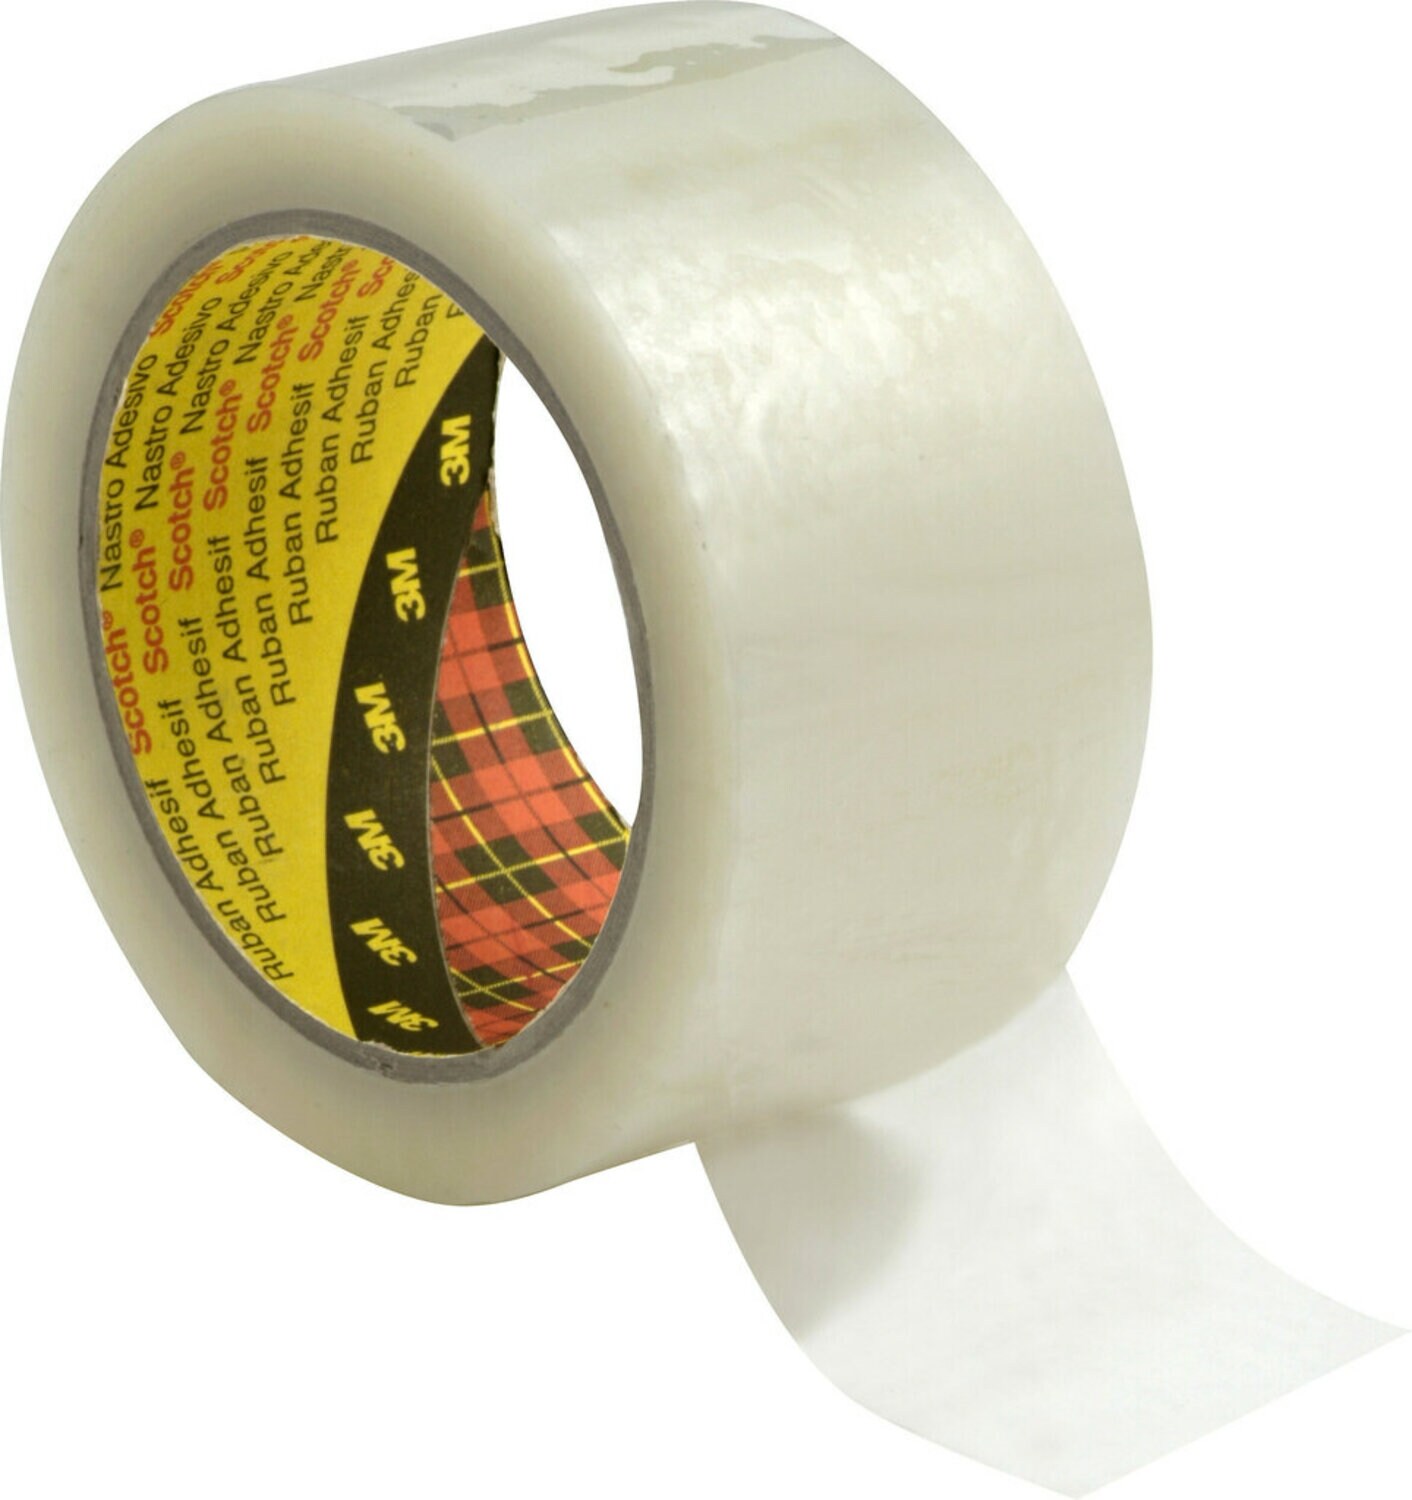 7100177854 - Scotch Custom Printed Box Sealing Tape 371CP, Clear, 72 mm x 100 m,
24/Case